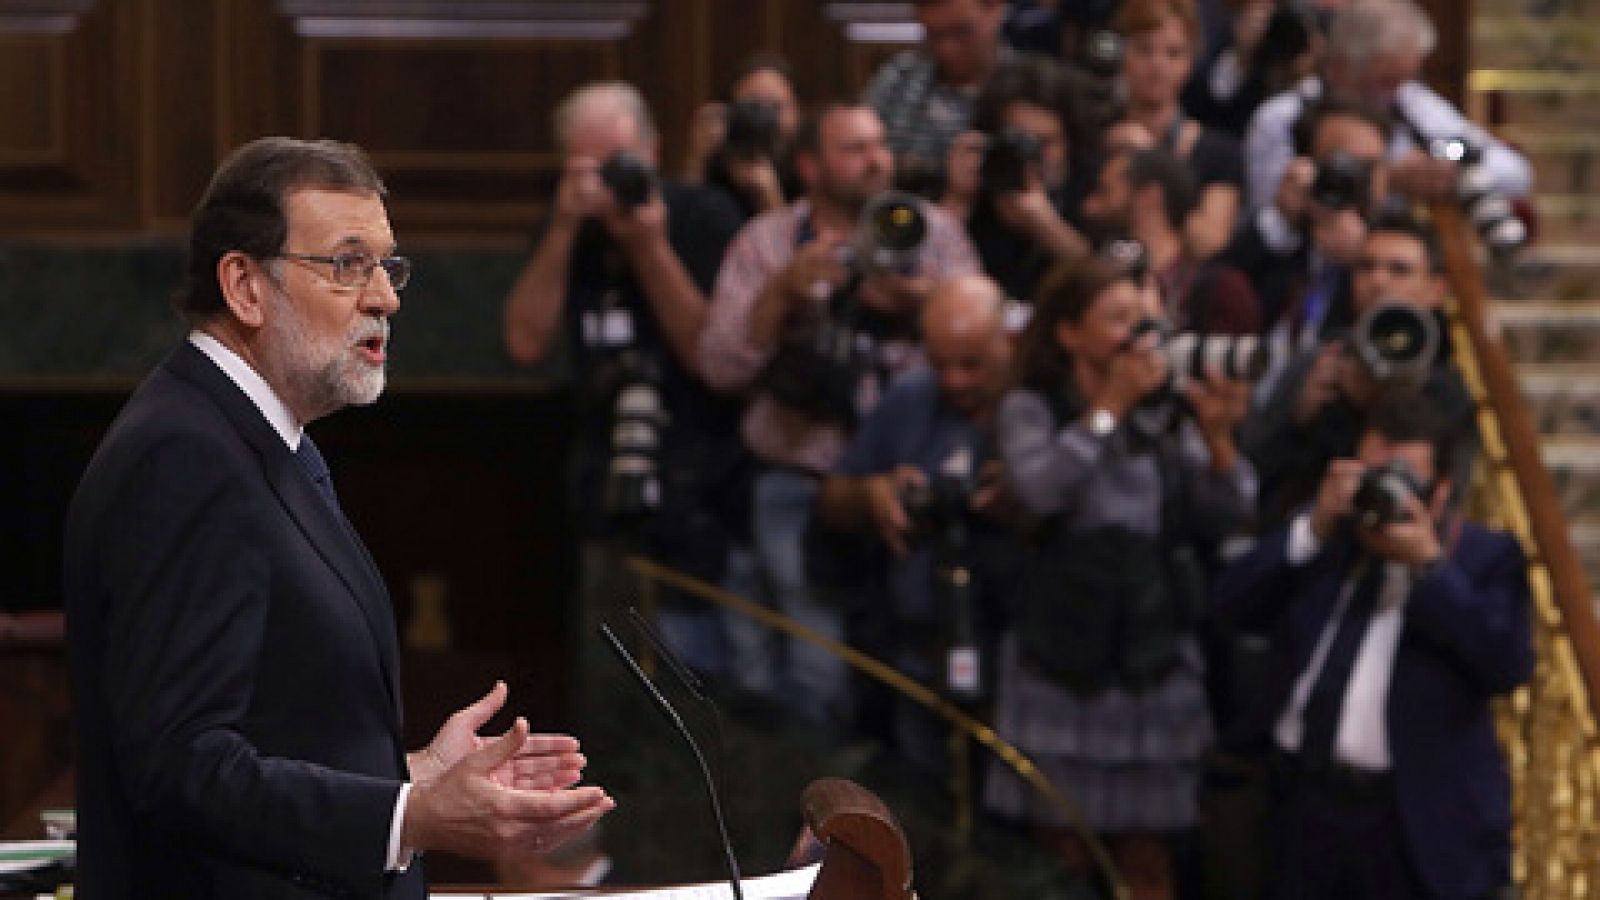 Independencia de Cataluña:  Rajoy avisa de que no hay "diálogo posible" entre la "ley democratica" y la "desobediencia o la ilegalidad"